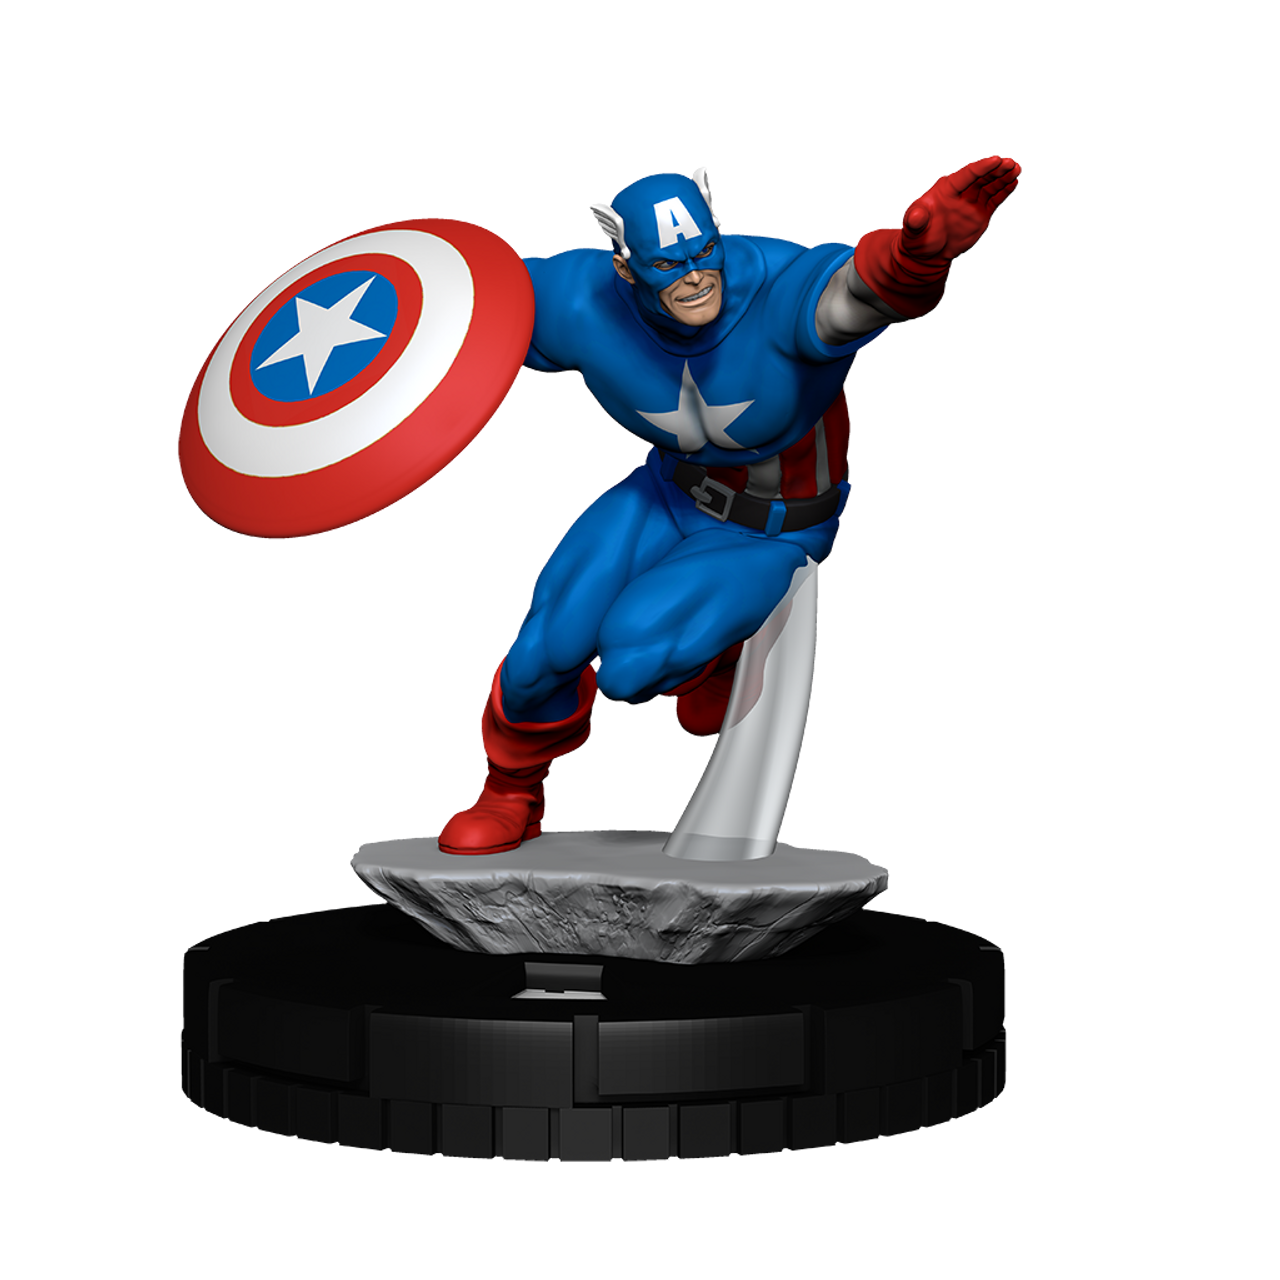 最高のショッピング WizKids Play at Home Kit Captain America Avengers 60th Anniversa  その他